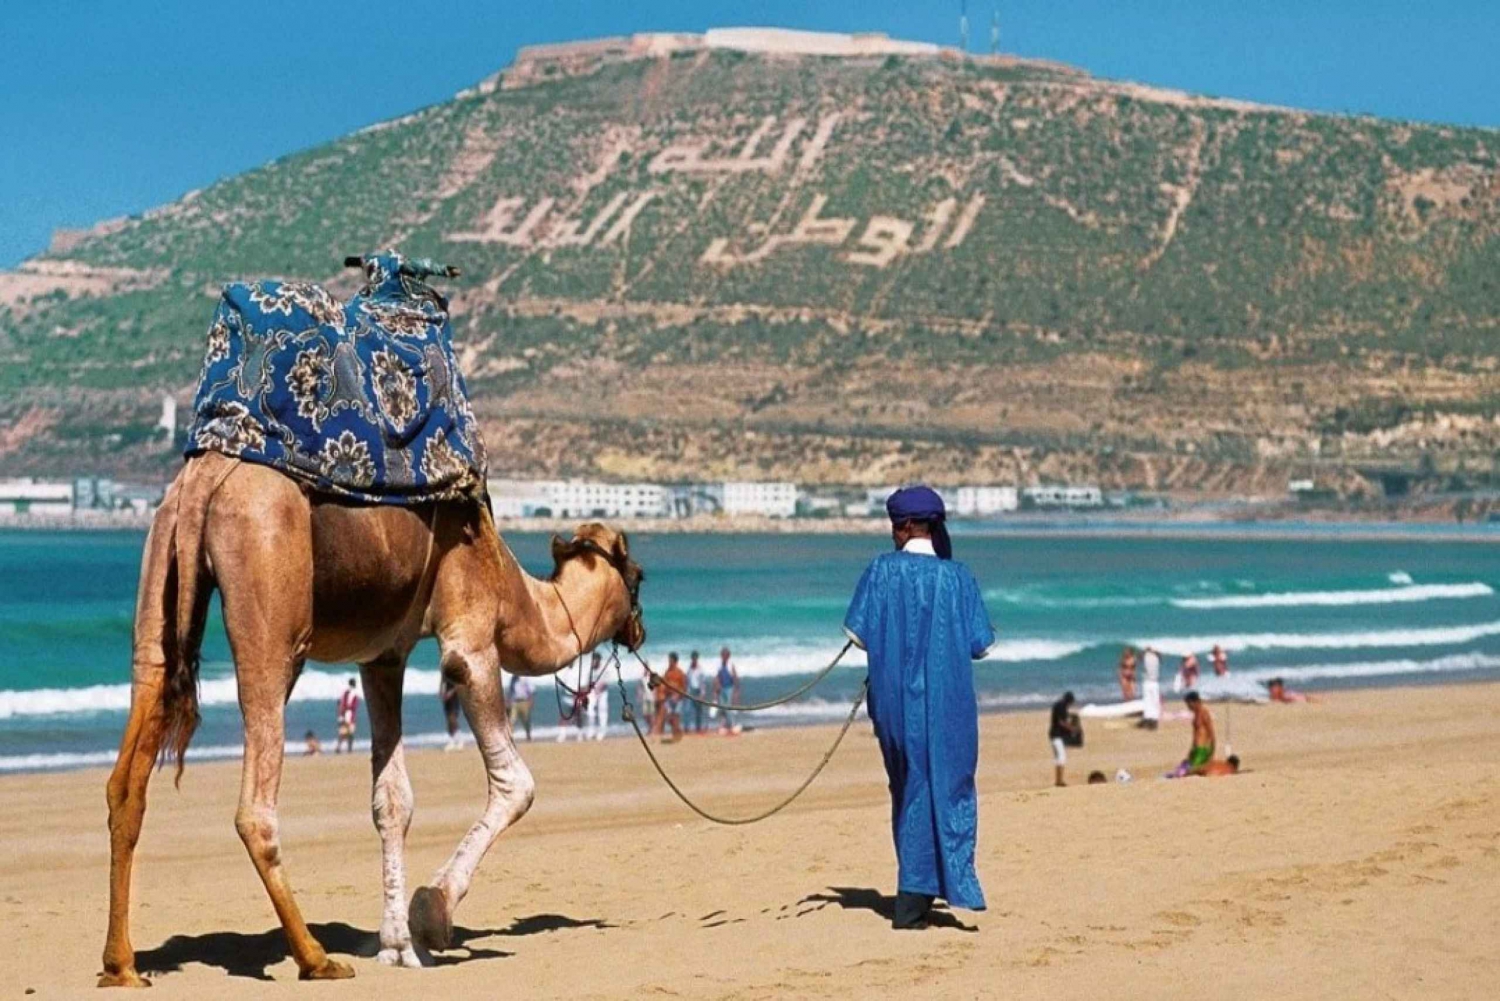 Privater Transfer zwischen Marrakesch & Agadir Stadt